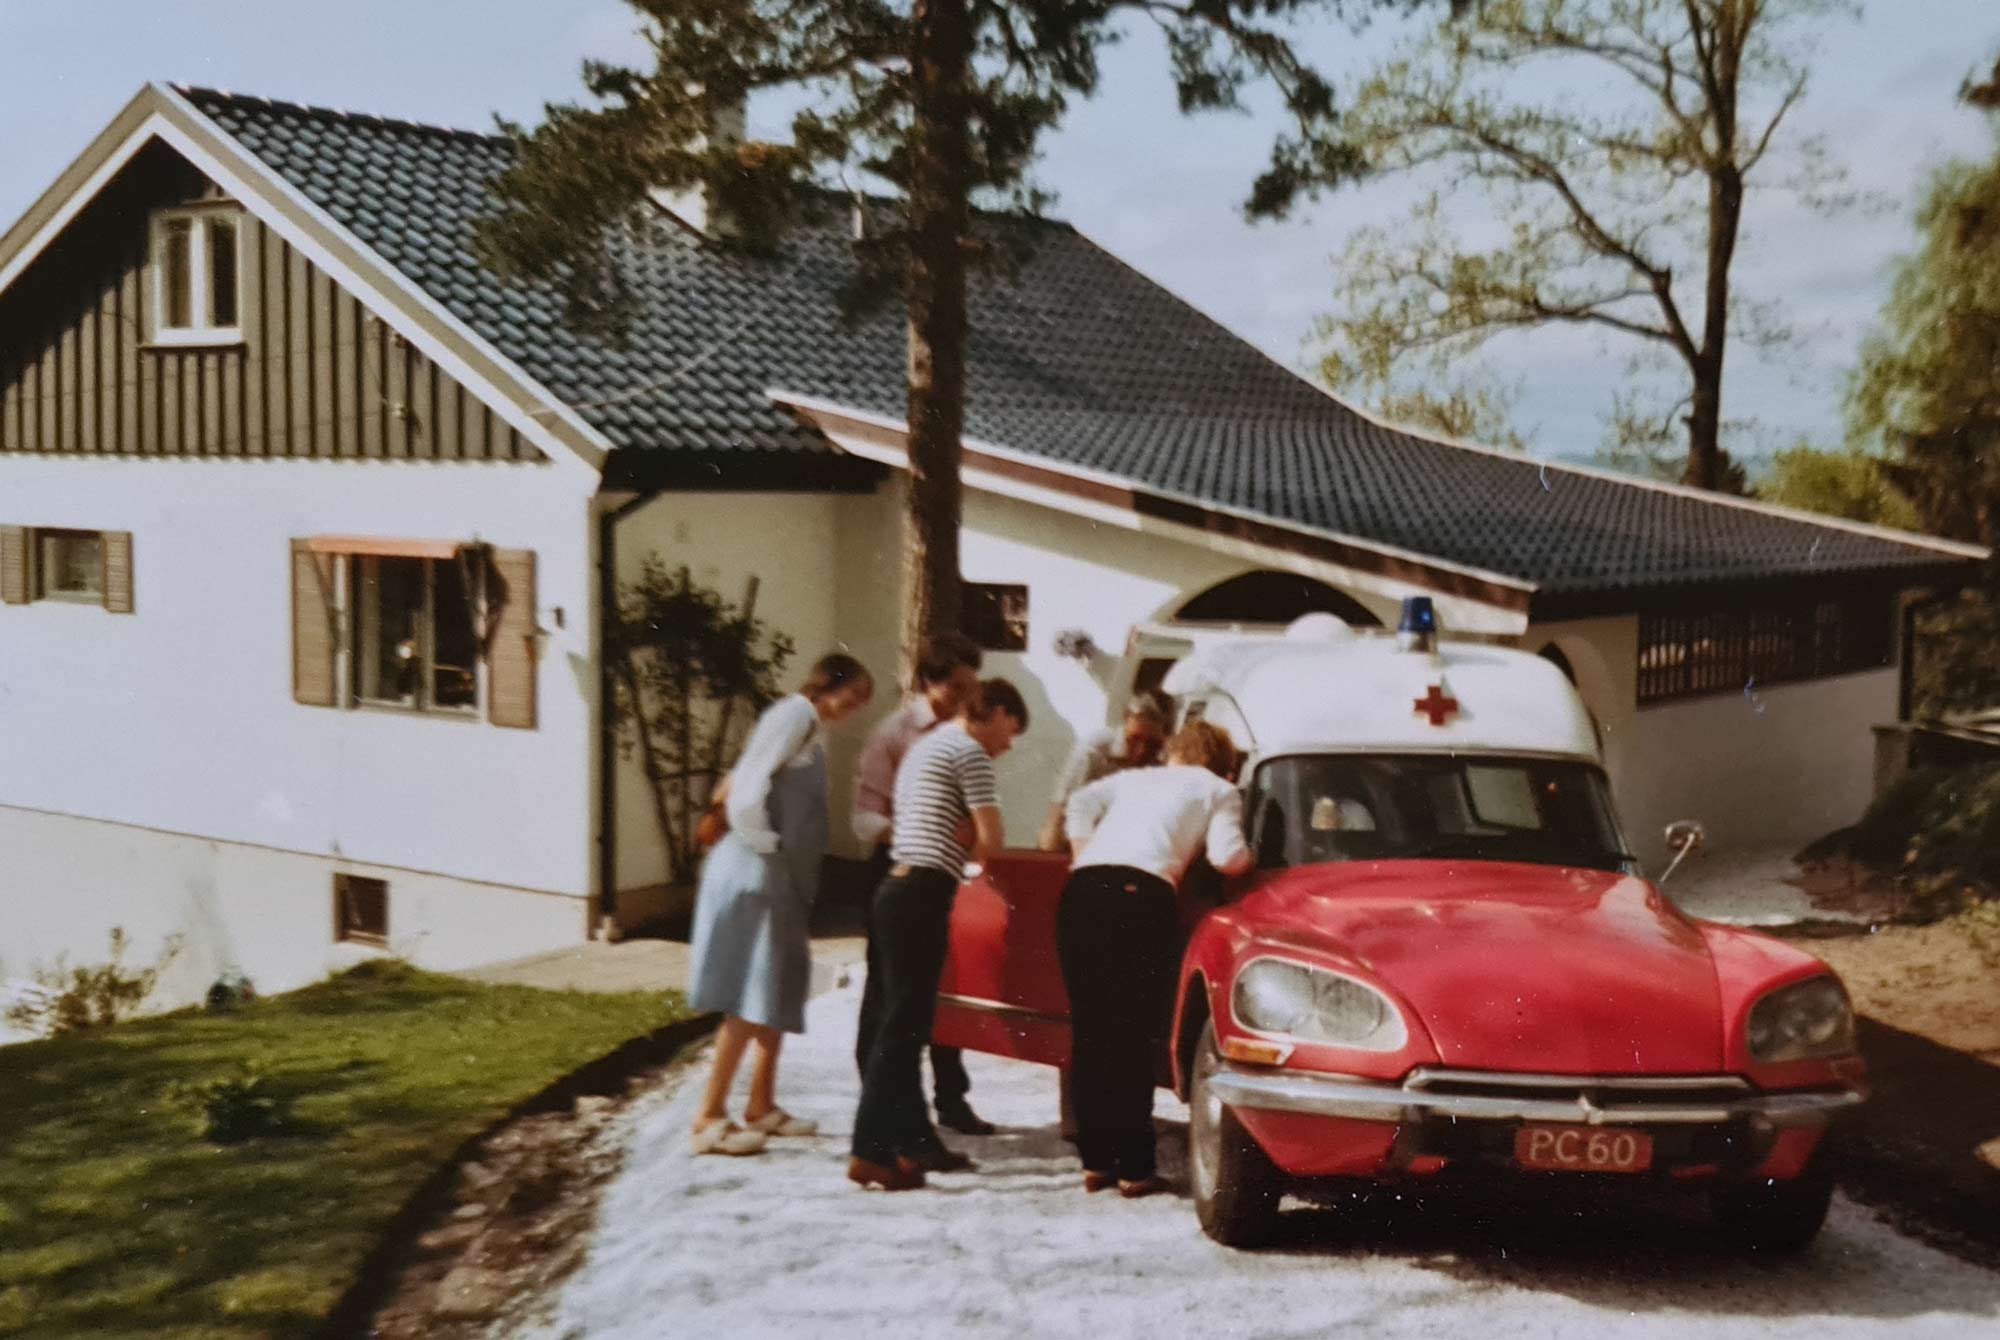 Drosjeeier Sigurd Trydal i Valle i Setesdal nord for Kristiansand fremsto som ihuga Citroën entusiast. Ryktene forteller at hans 1975-modell Citroën 250CD fortsatt lever i beste velgående. Foto: Ståle Vestad.